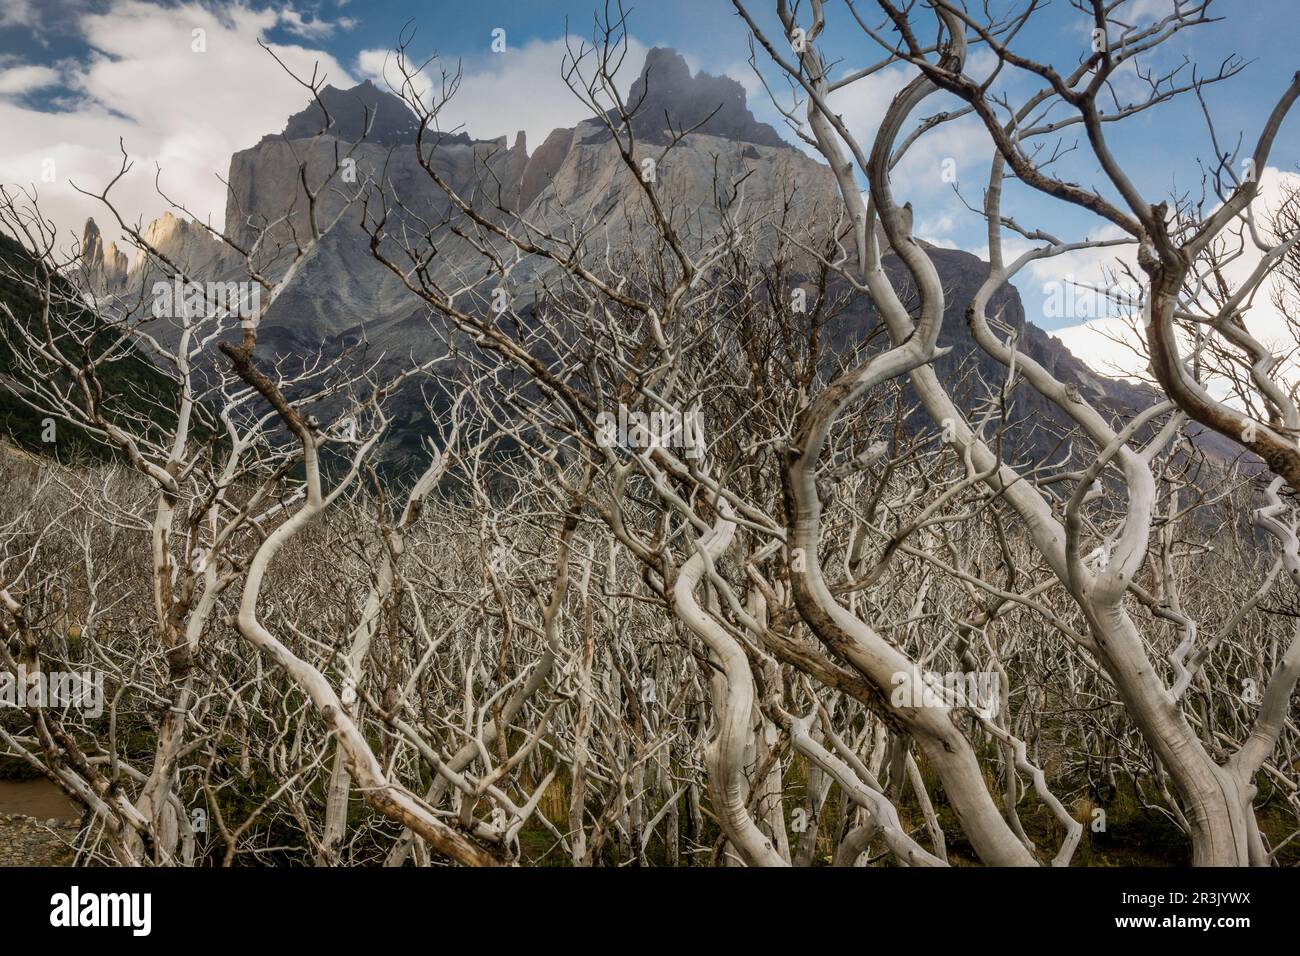 zona incendiada, trekking W, Parque nacional Torres del Paine,Sistema Nacional de Áreas Silvestres Protegidas del Estado de Chile.Patagonia, República de Chile,América del Sur. Stock Photo